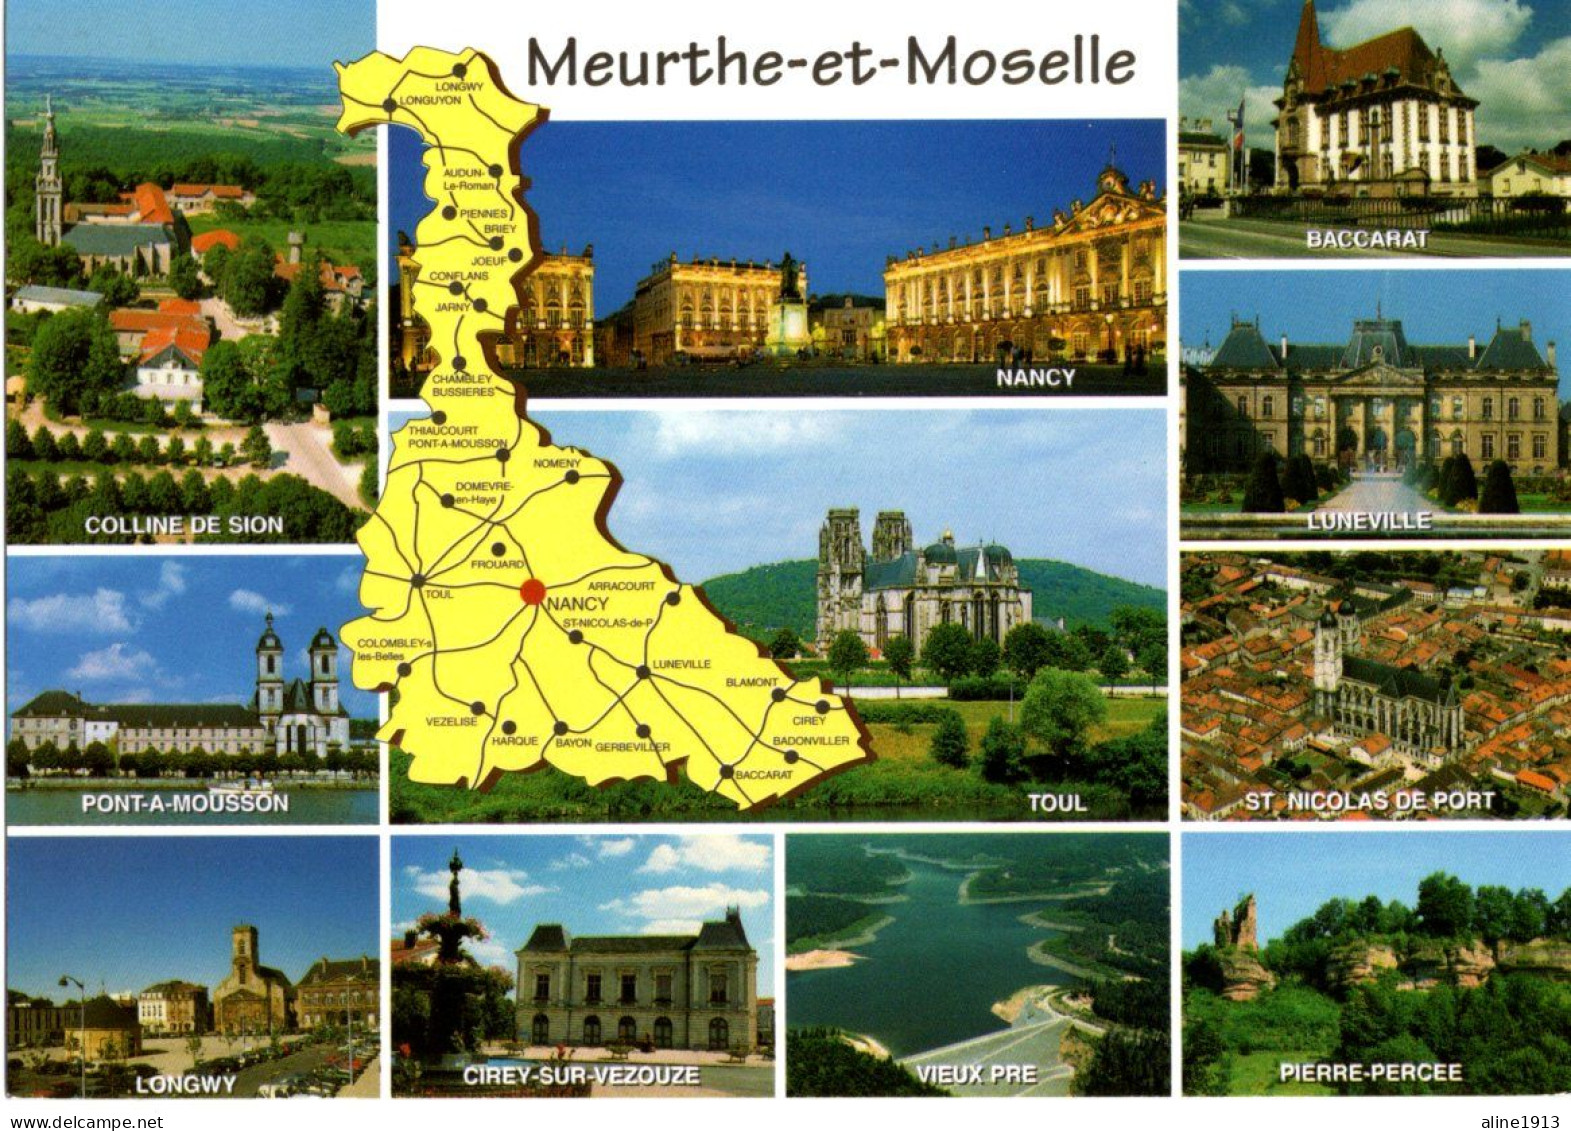 54 MEURTHE ET MOSELLE / GEOGRAPHIQUE ET MULTI-VUES - Landkaarten